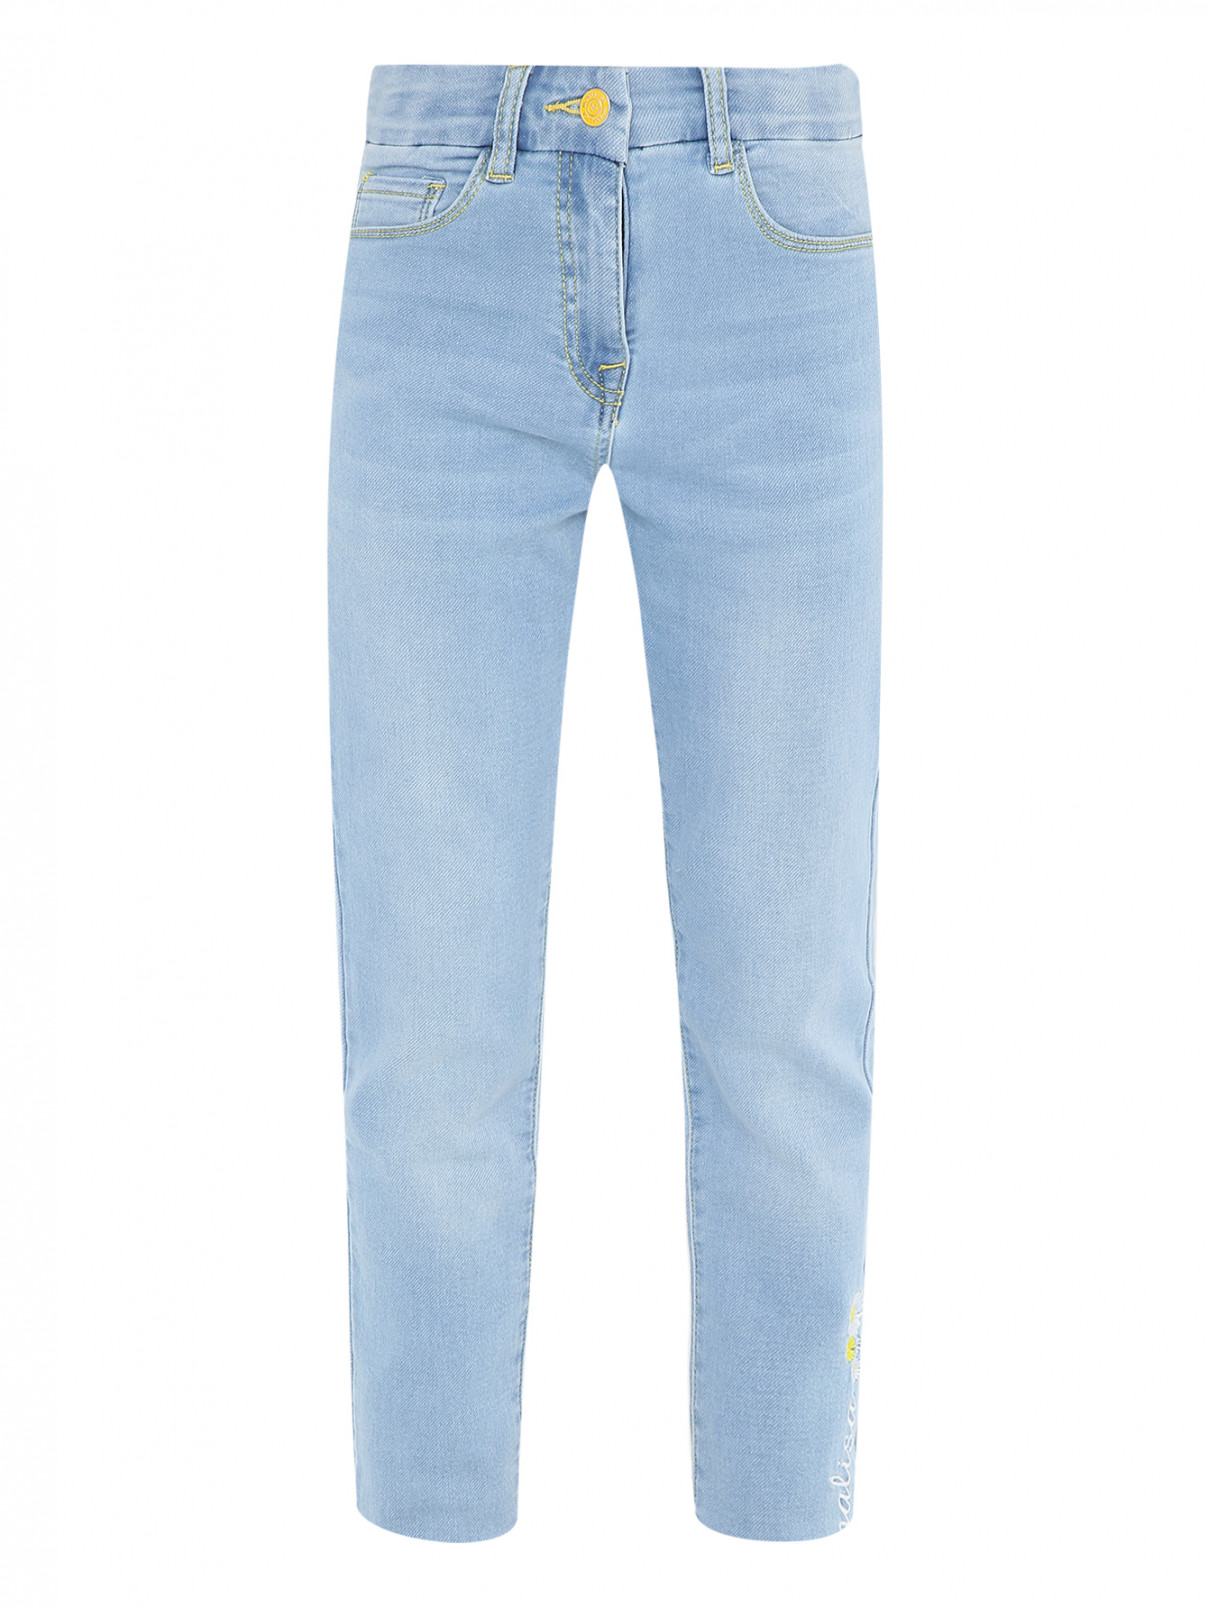 Прямые джинсы с вышивкой MONNALISA  –  Общий вид  – Цвет:  Синий